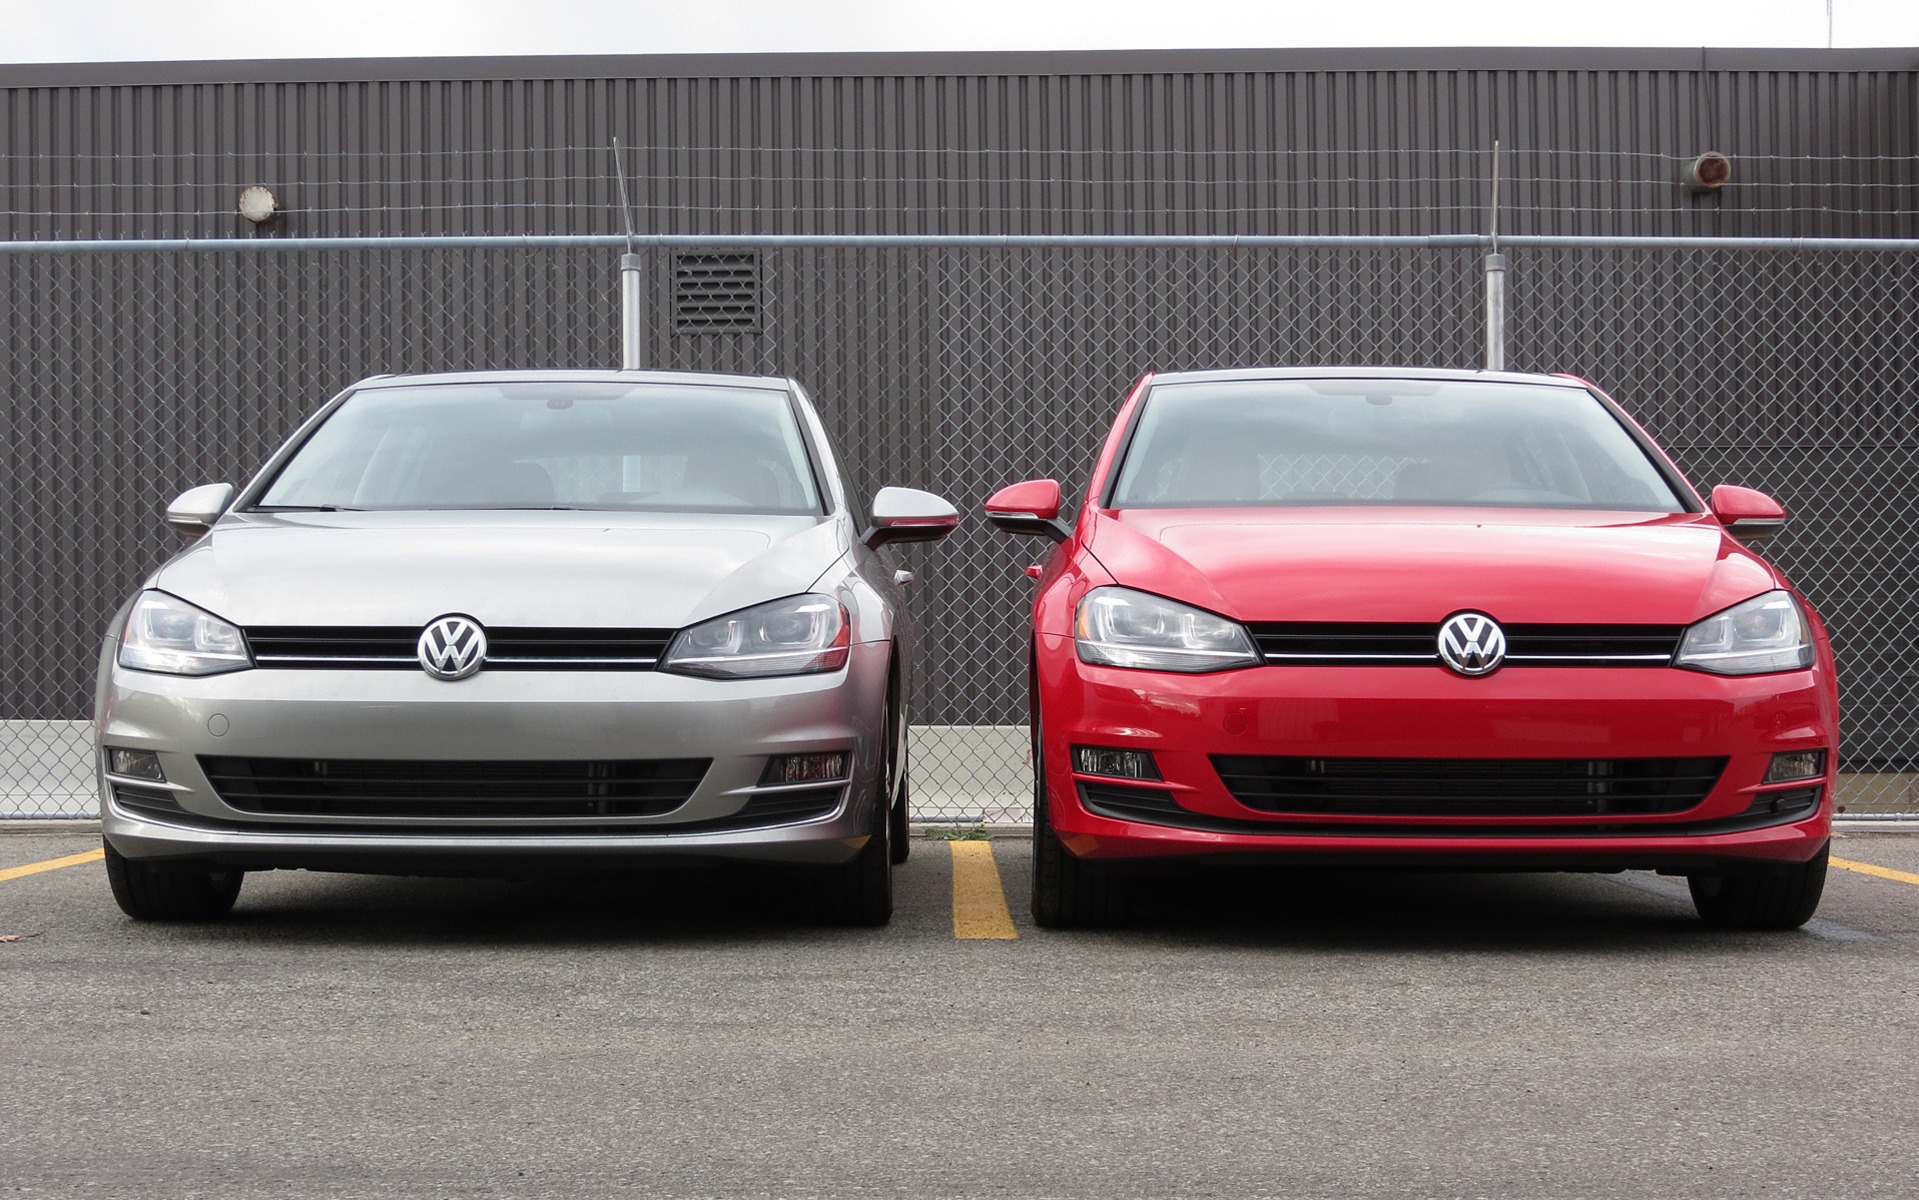 Verzorger vlinder Op de kop van Volkswagen Golf TDI versus Golf TSI 2015: Two Tests Over 4,000 km - The Car  Guide